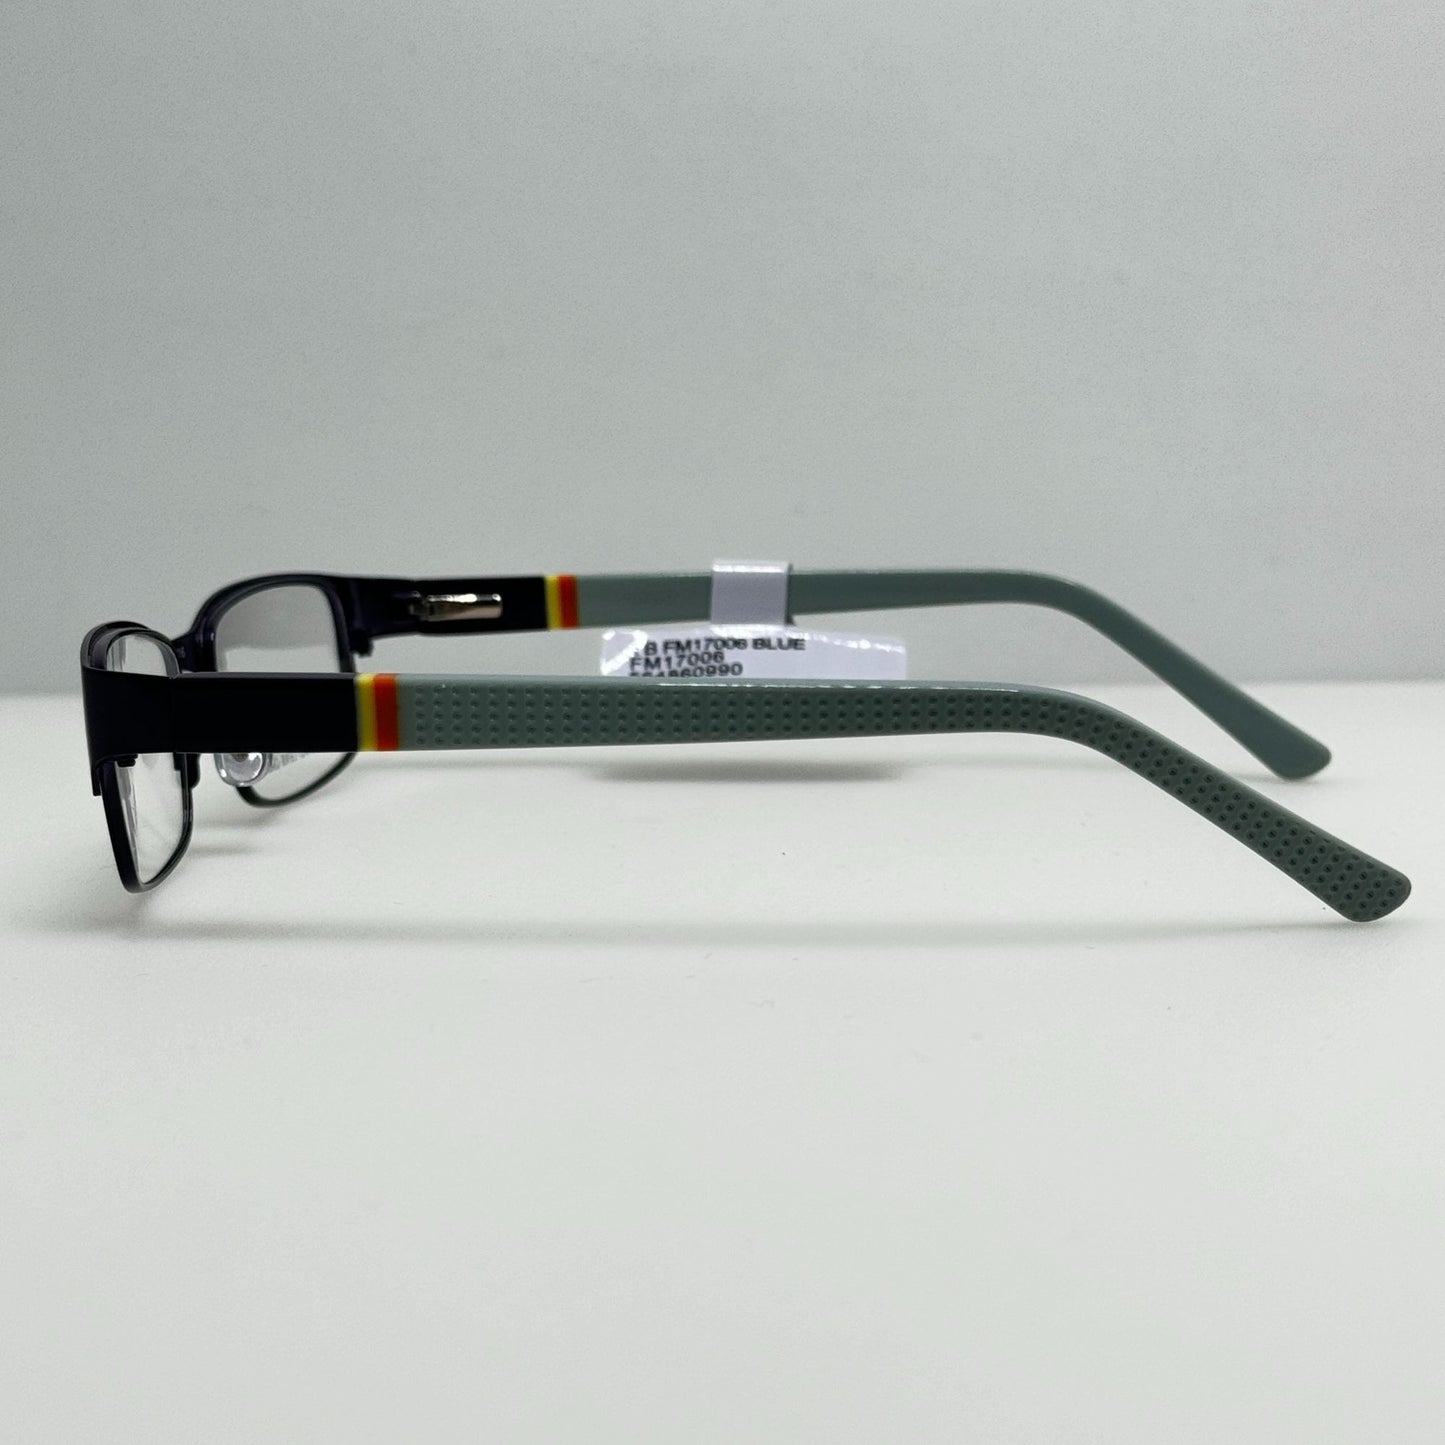 YB Eyeglasses Eye Glasses Frames FM17006 Blue 48-16-130